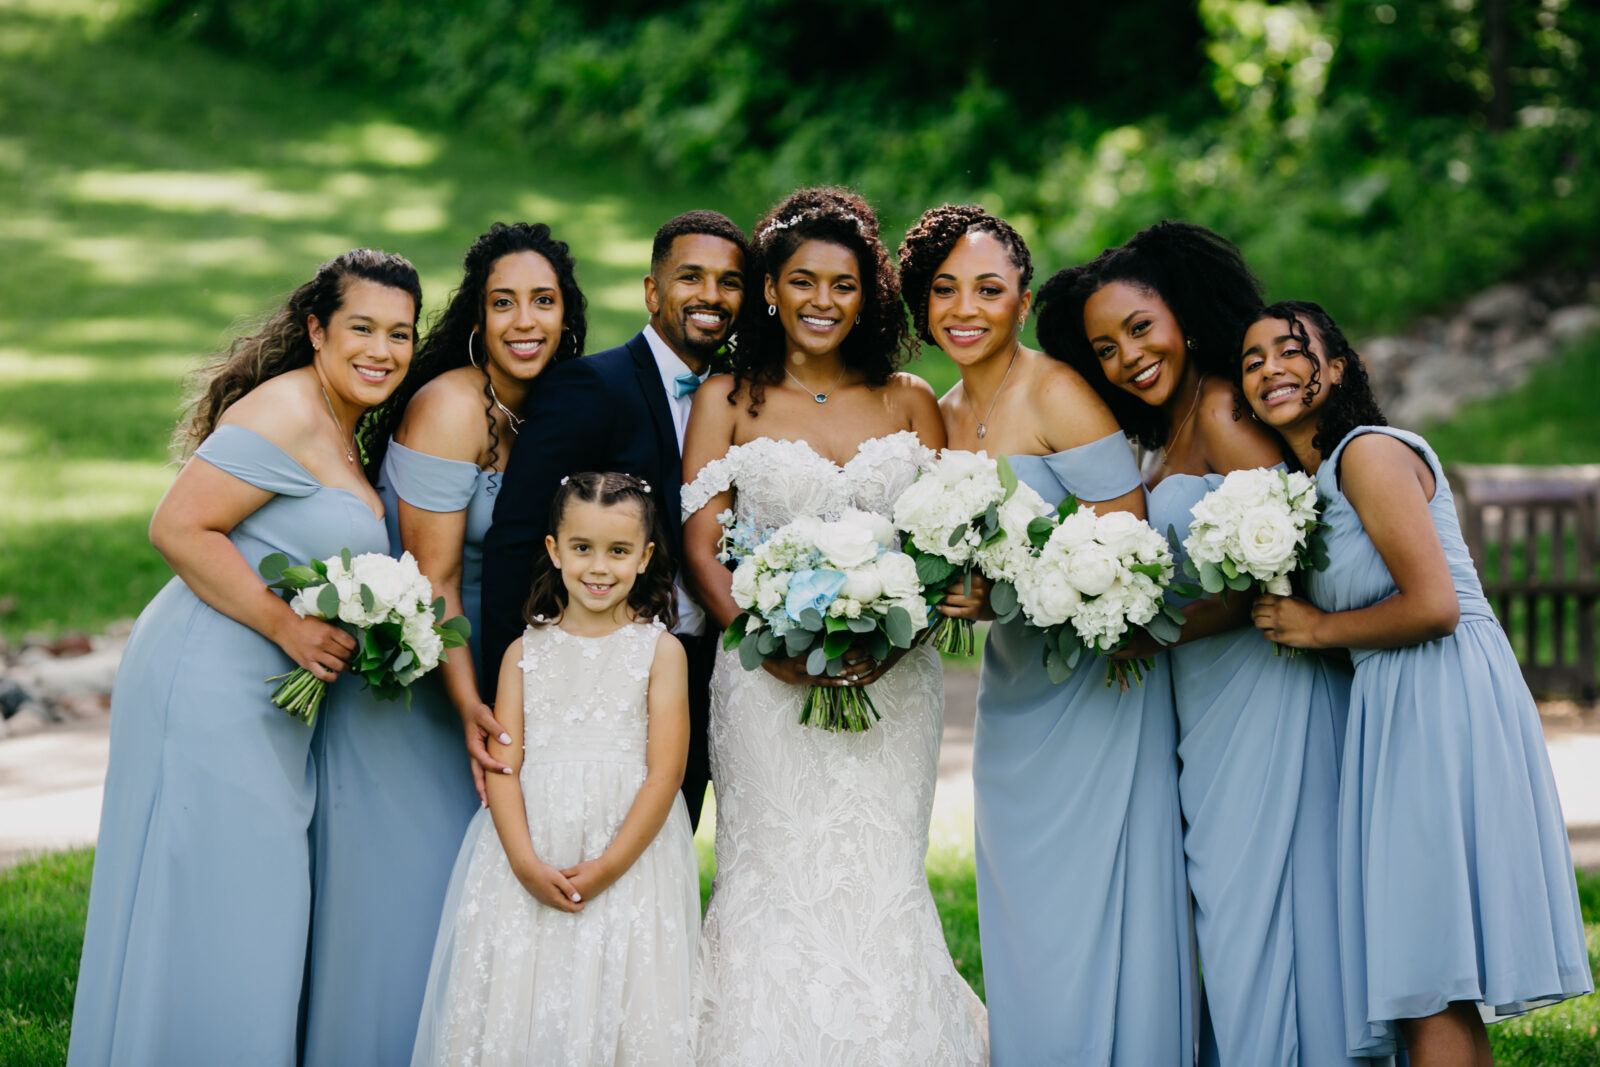 family photo during a garden wedding 